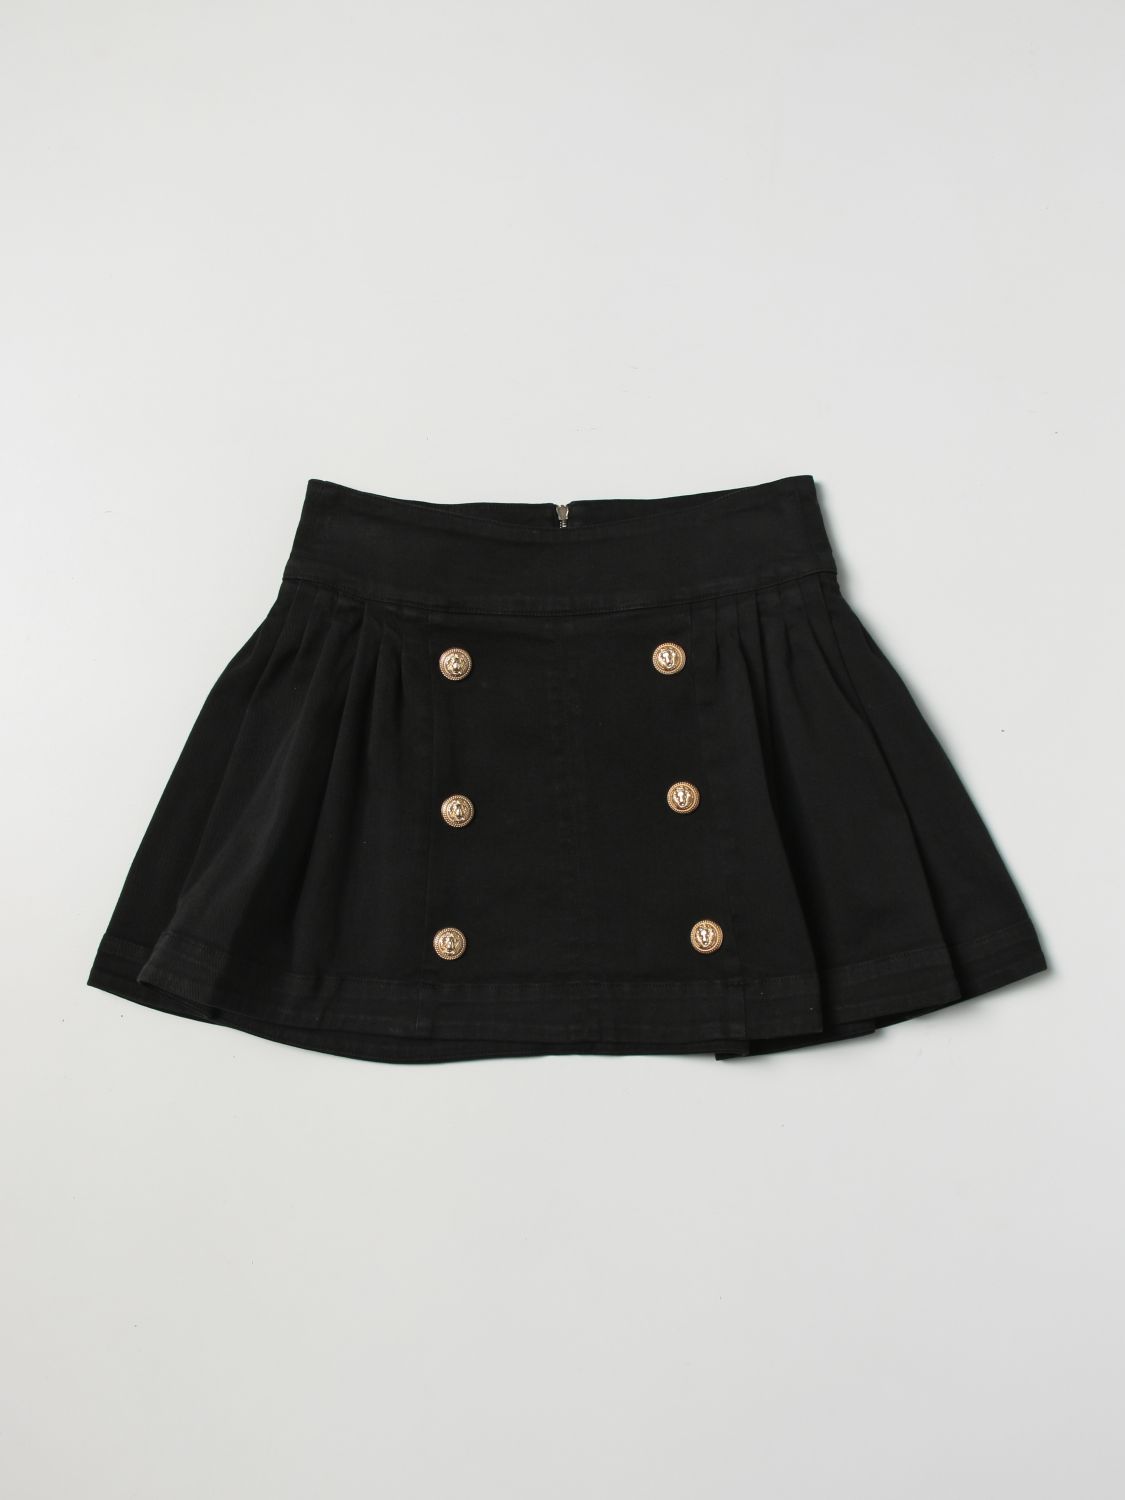 BALMAIN KIDS: skirt for girls - Black | Balmain Kids skirt BS7A11D0039 ...